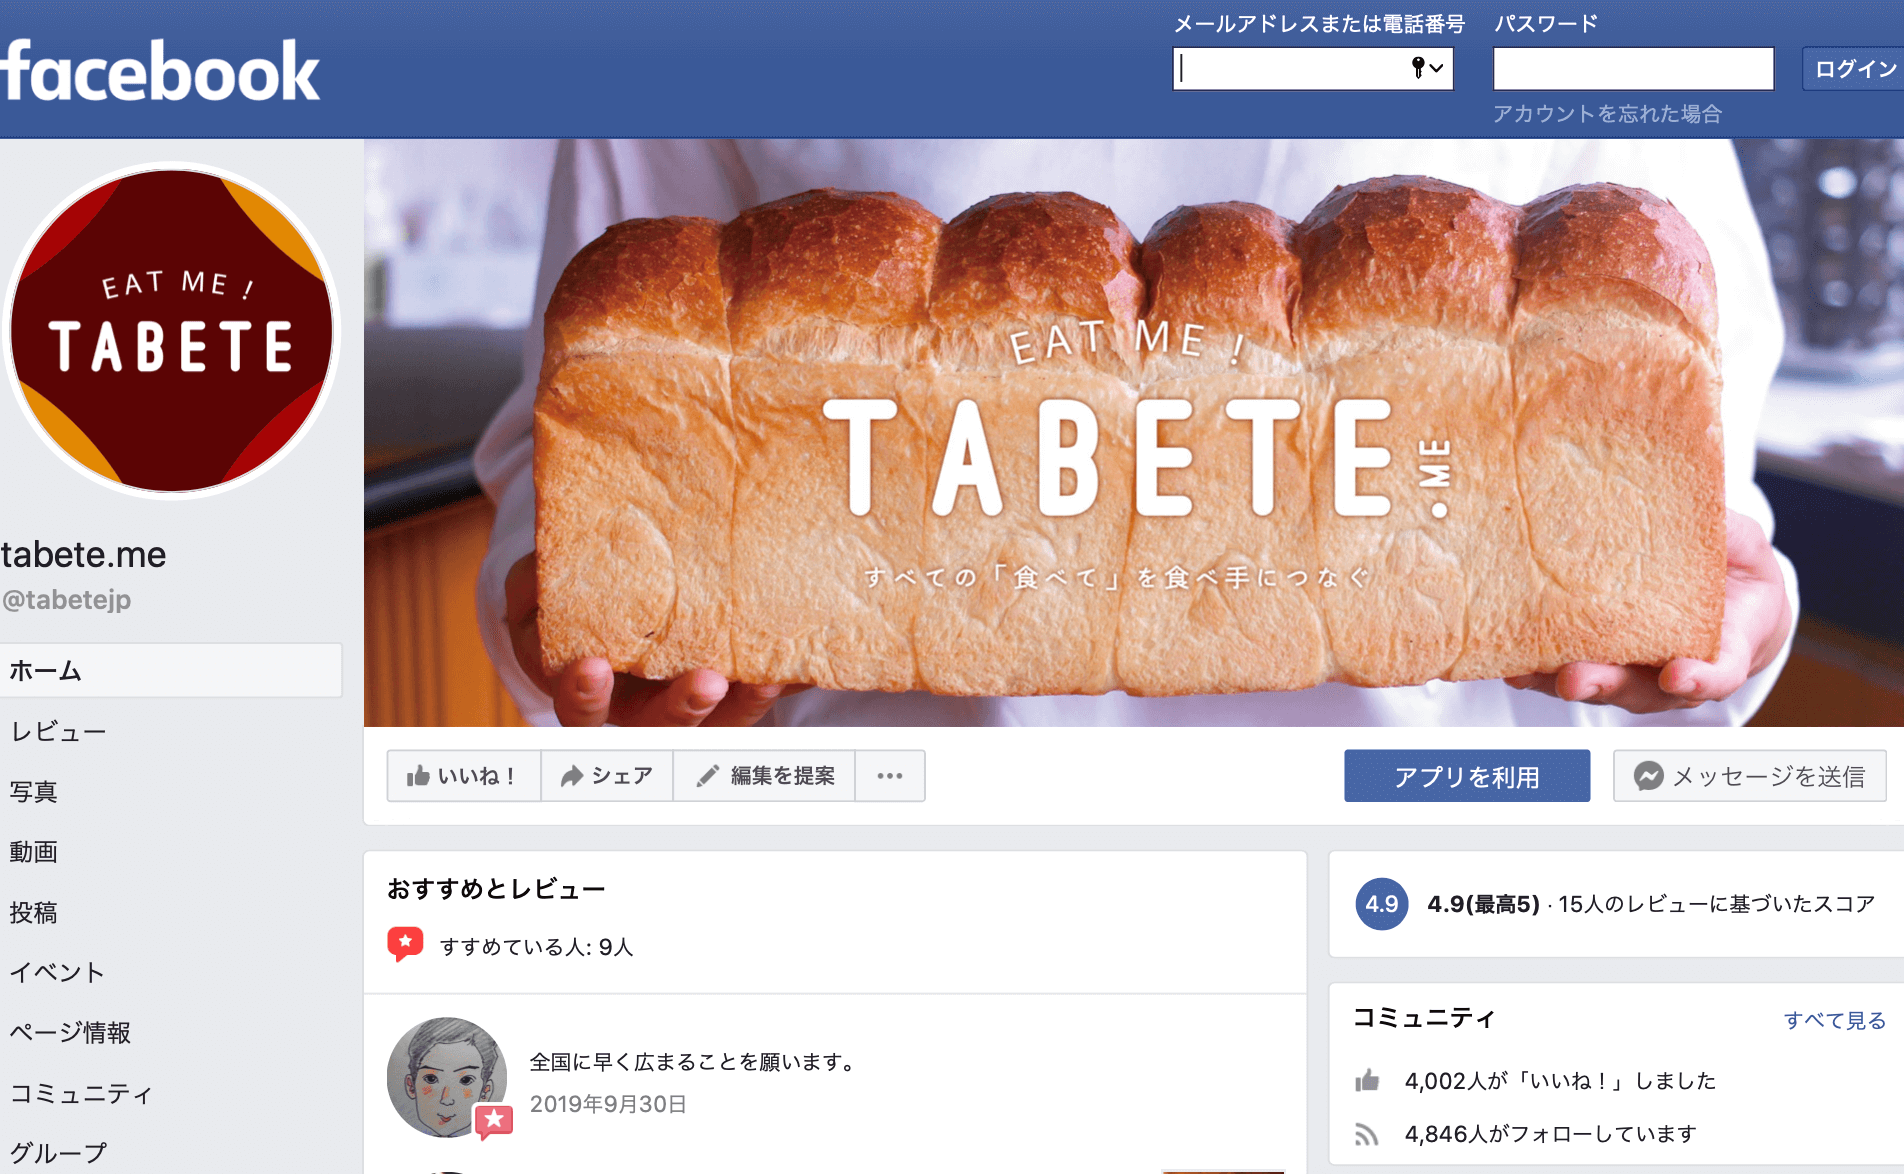 TABETE Facebook 2020.3.19